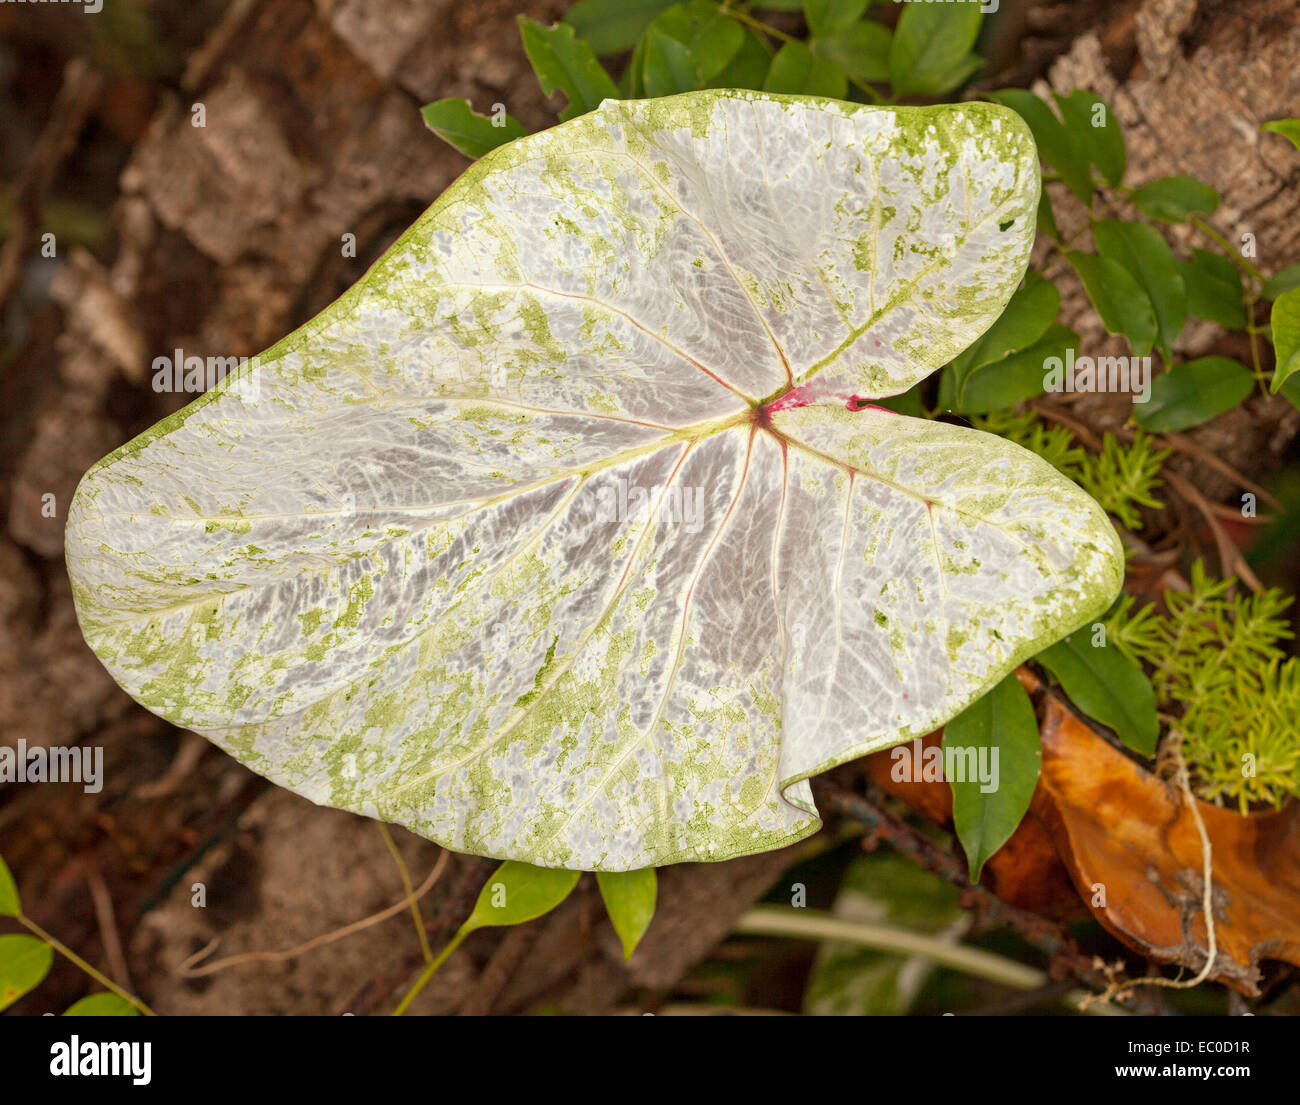 Bunte Grüne Weiße Blätter Blatt Pflanze Stockfotos und -bilder Kaufen -  Alamy